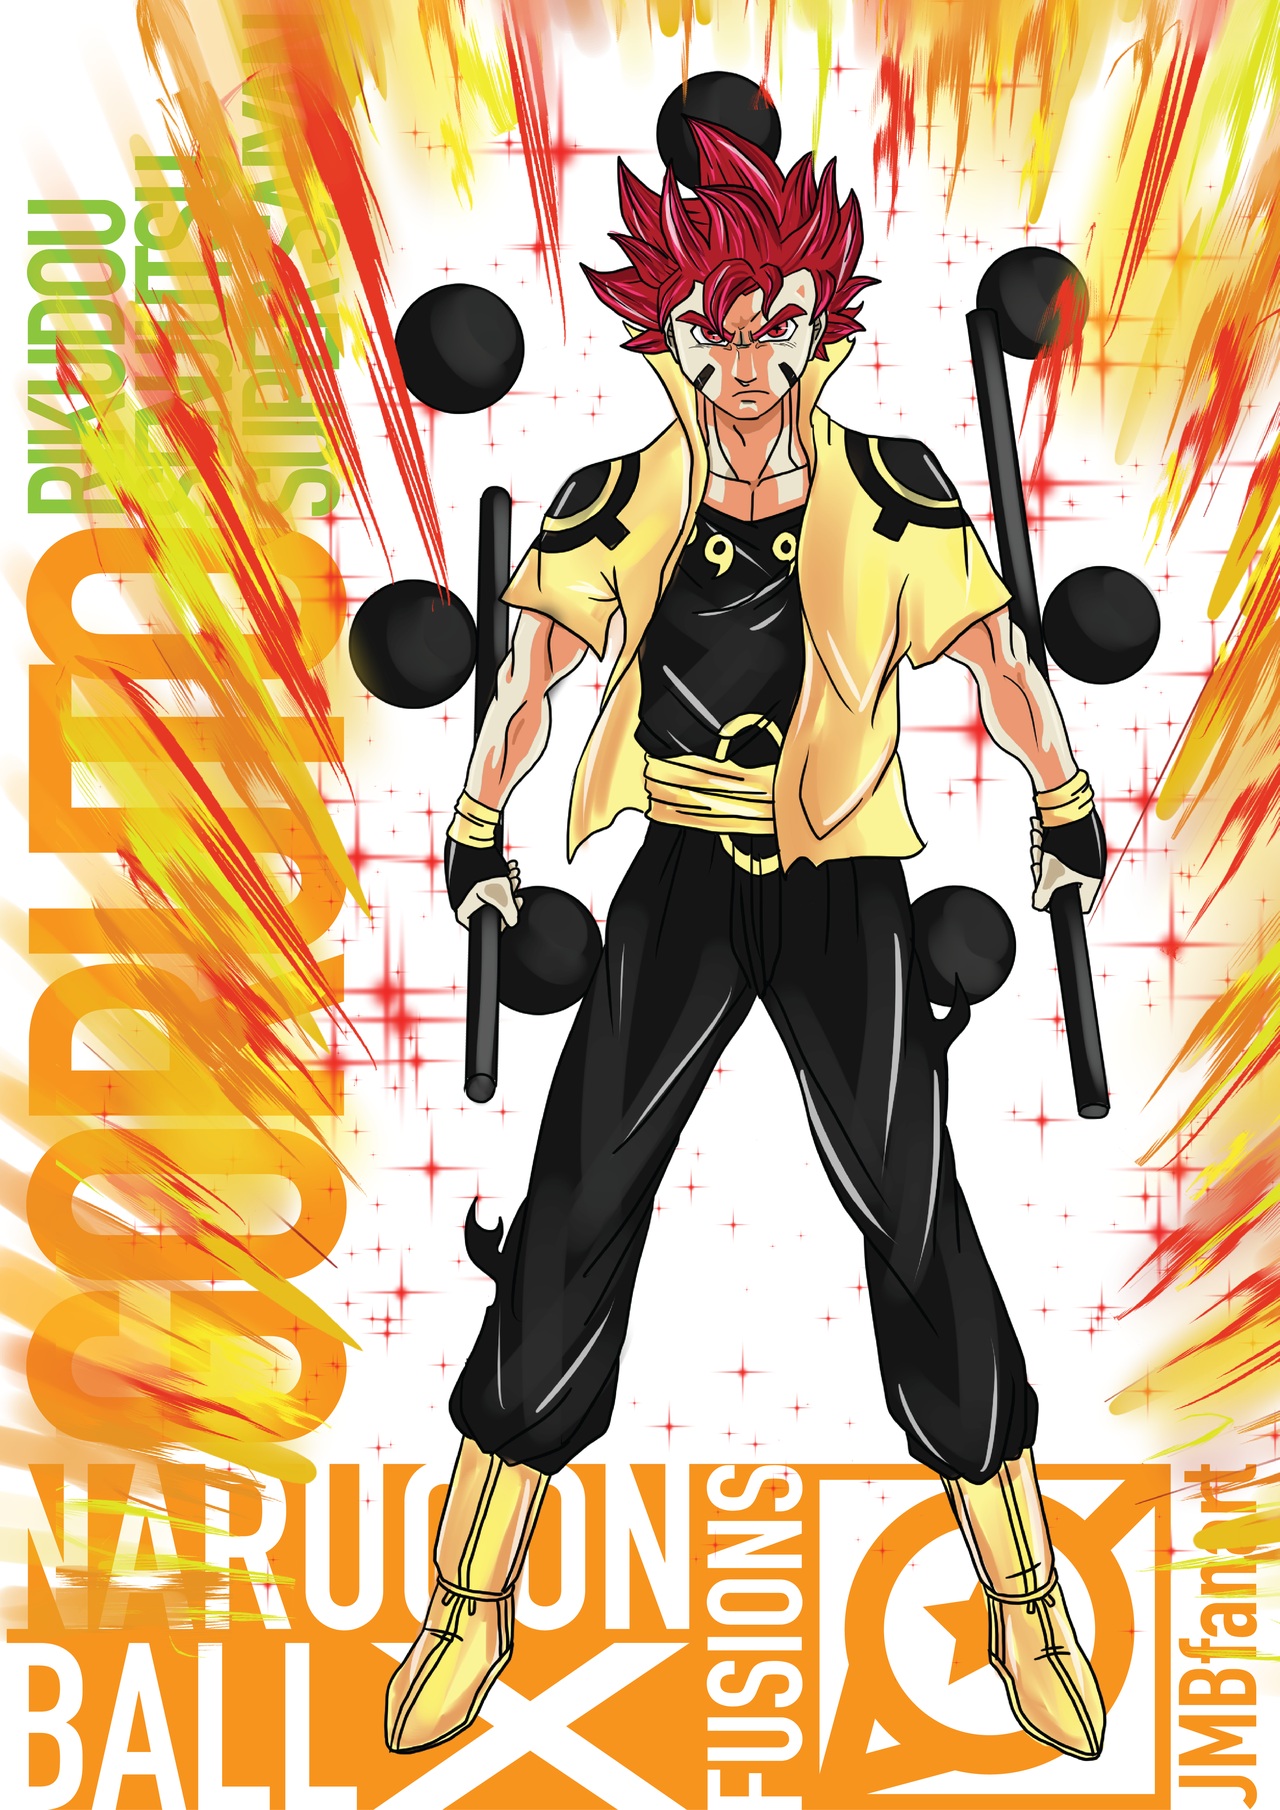 Manga GO - Kinh ngạc với bộ ảnh các nhân vật Dragon Ball hợp thể với Naruto 22